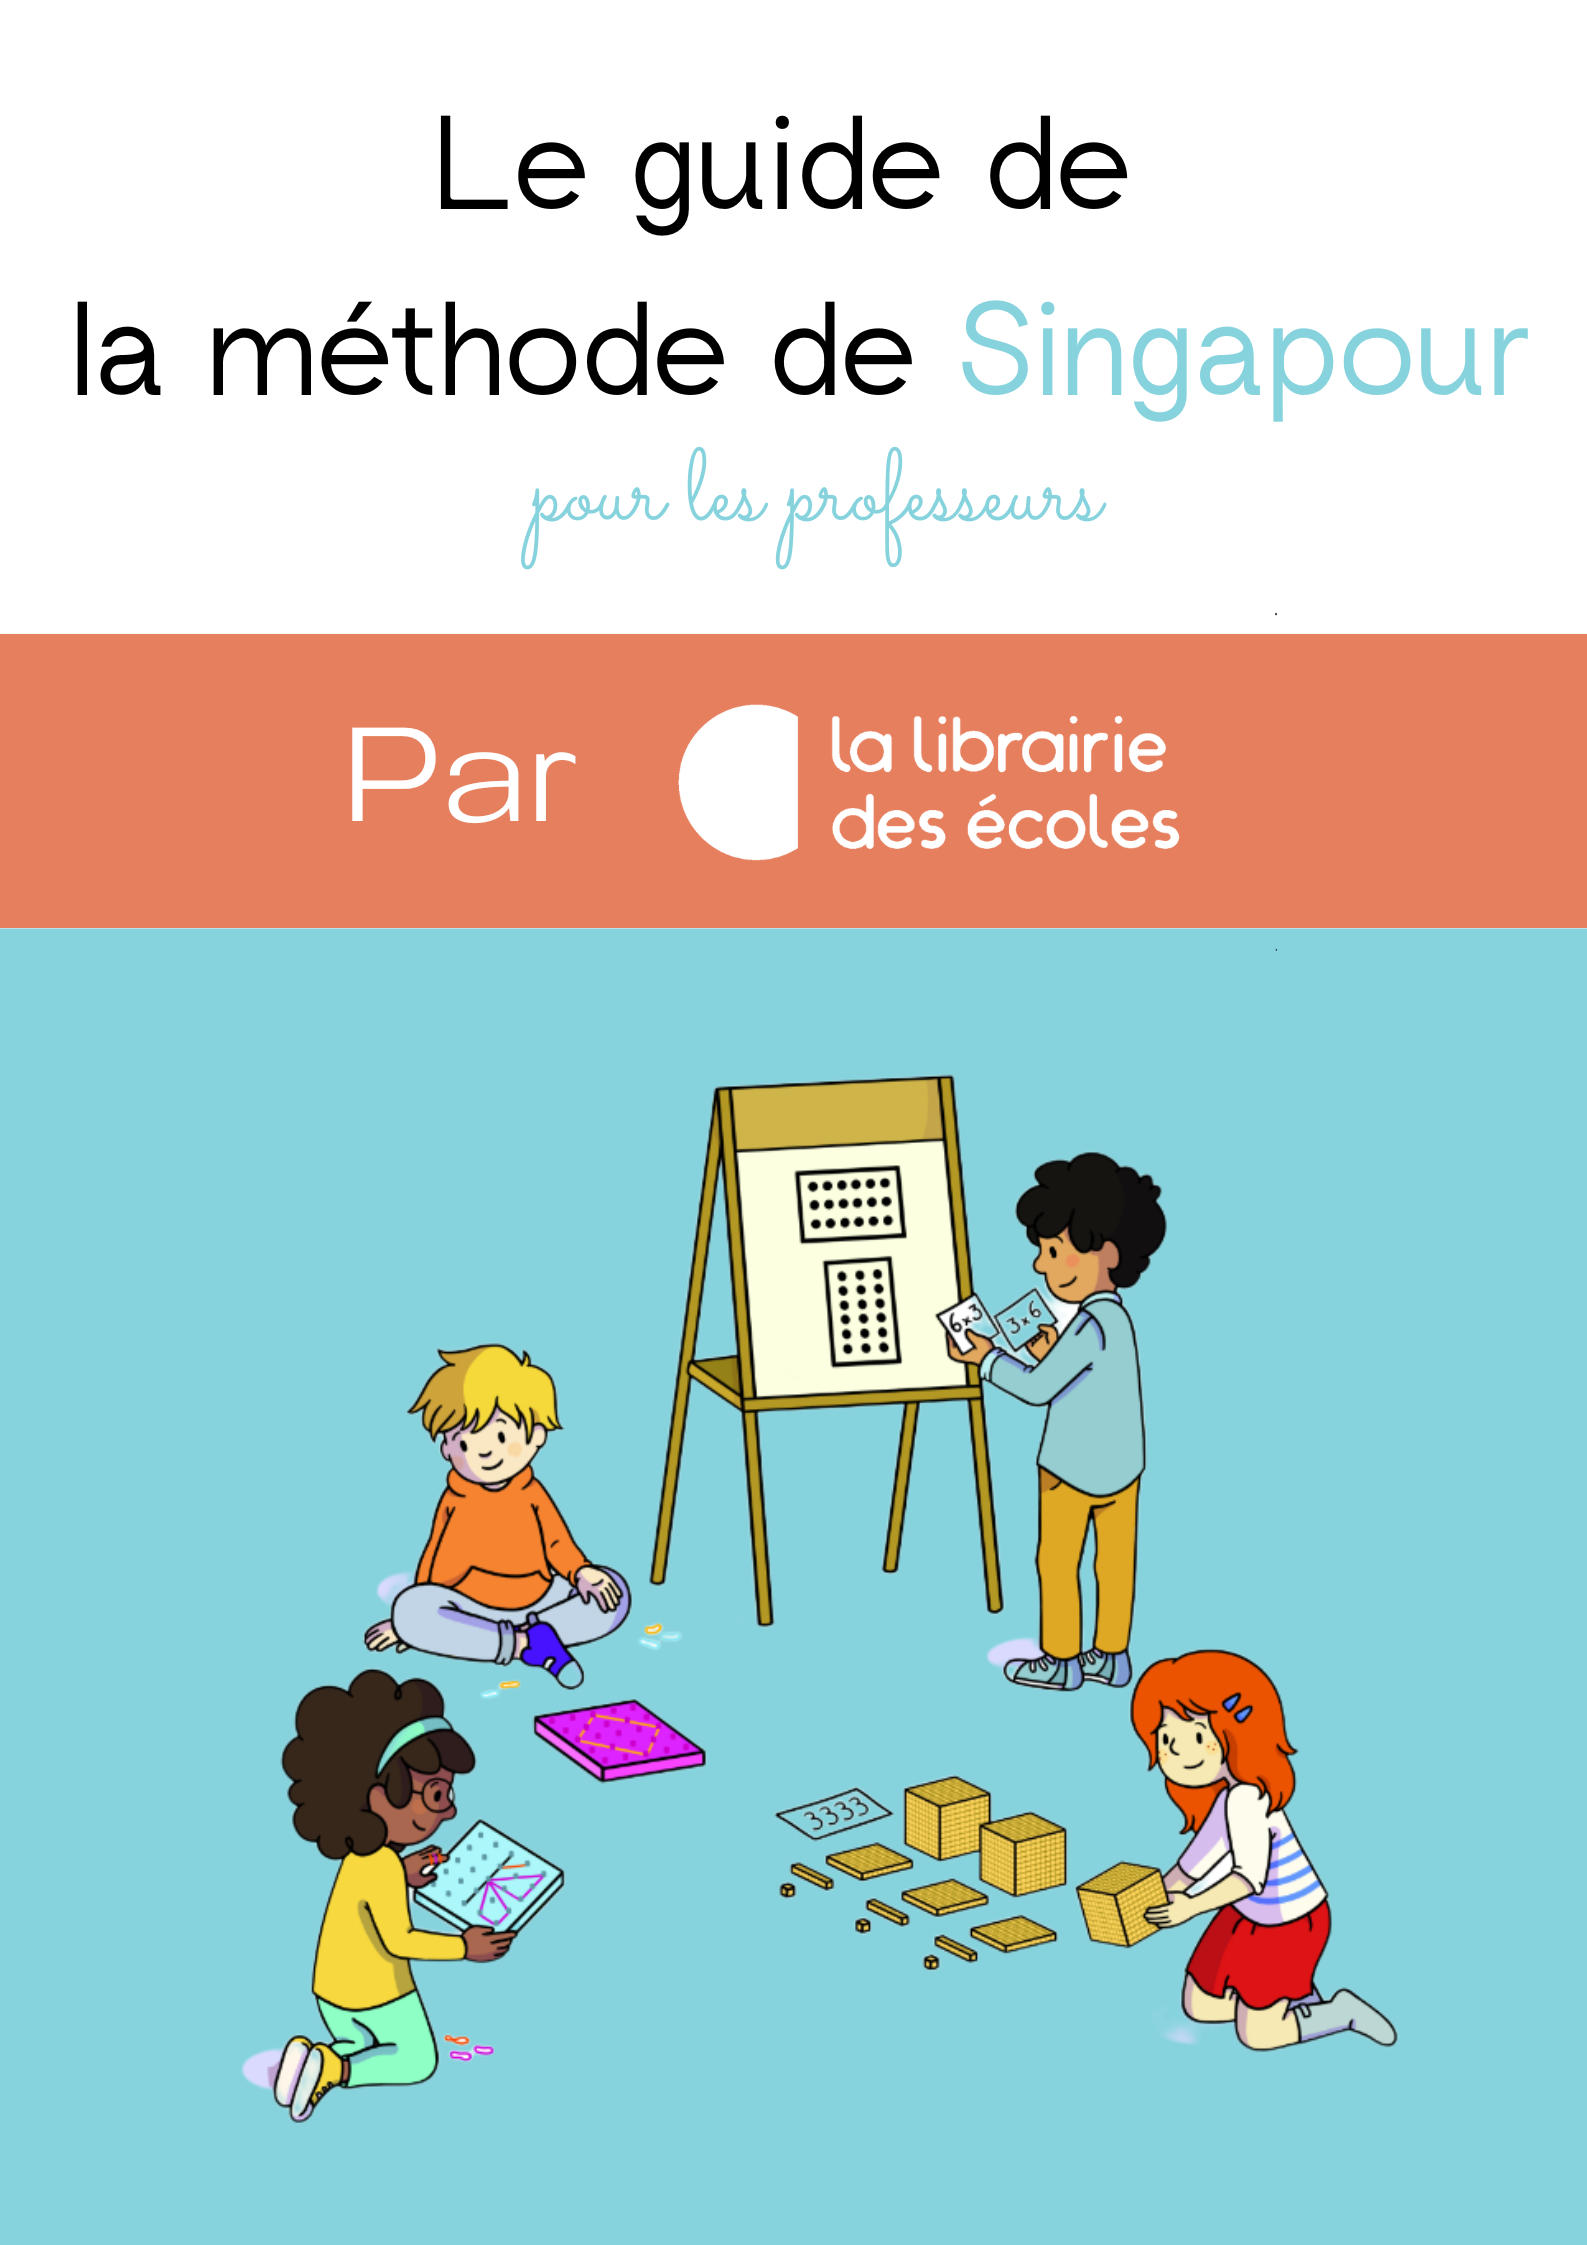 Méthode de Singapour - La Courte Échelle, Sèvres